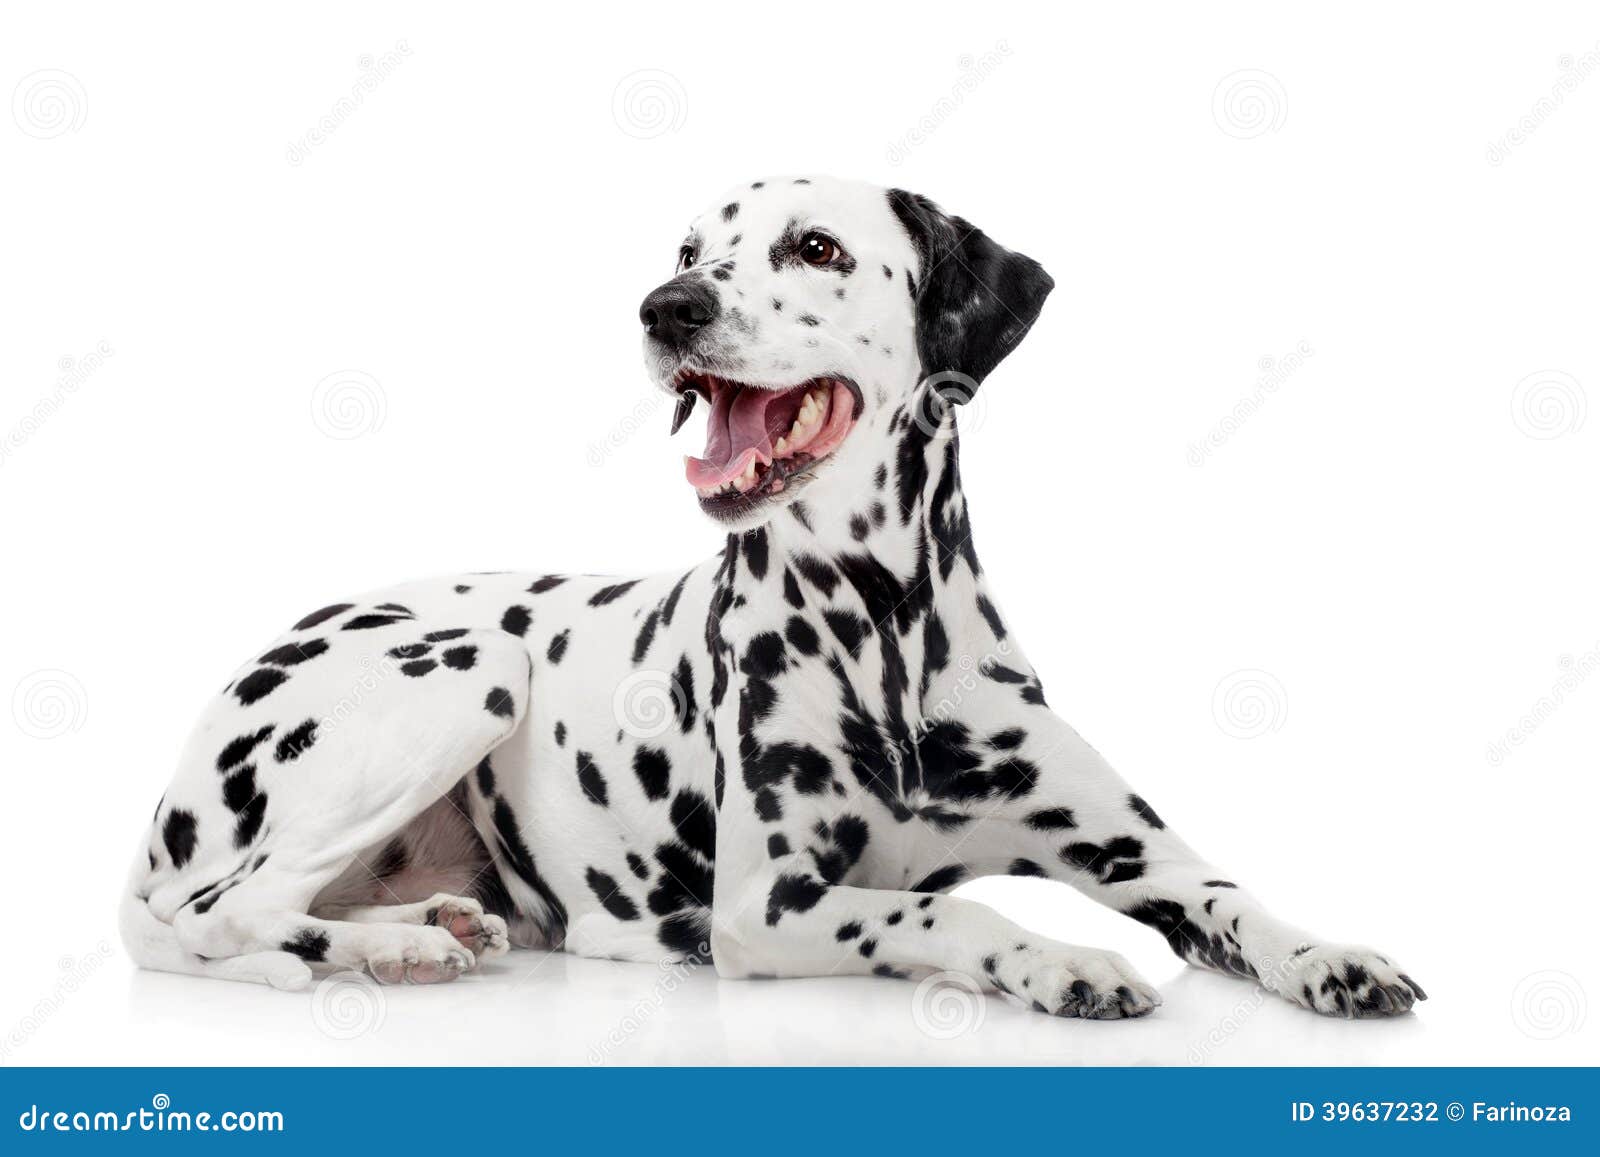 dalmatian dog,  on white